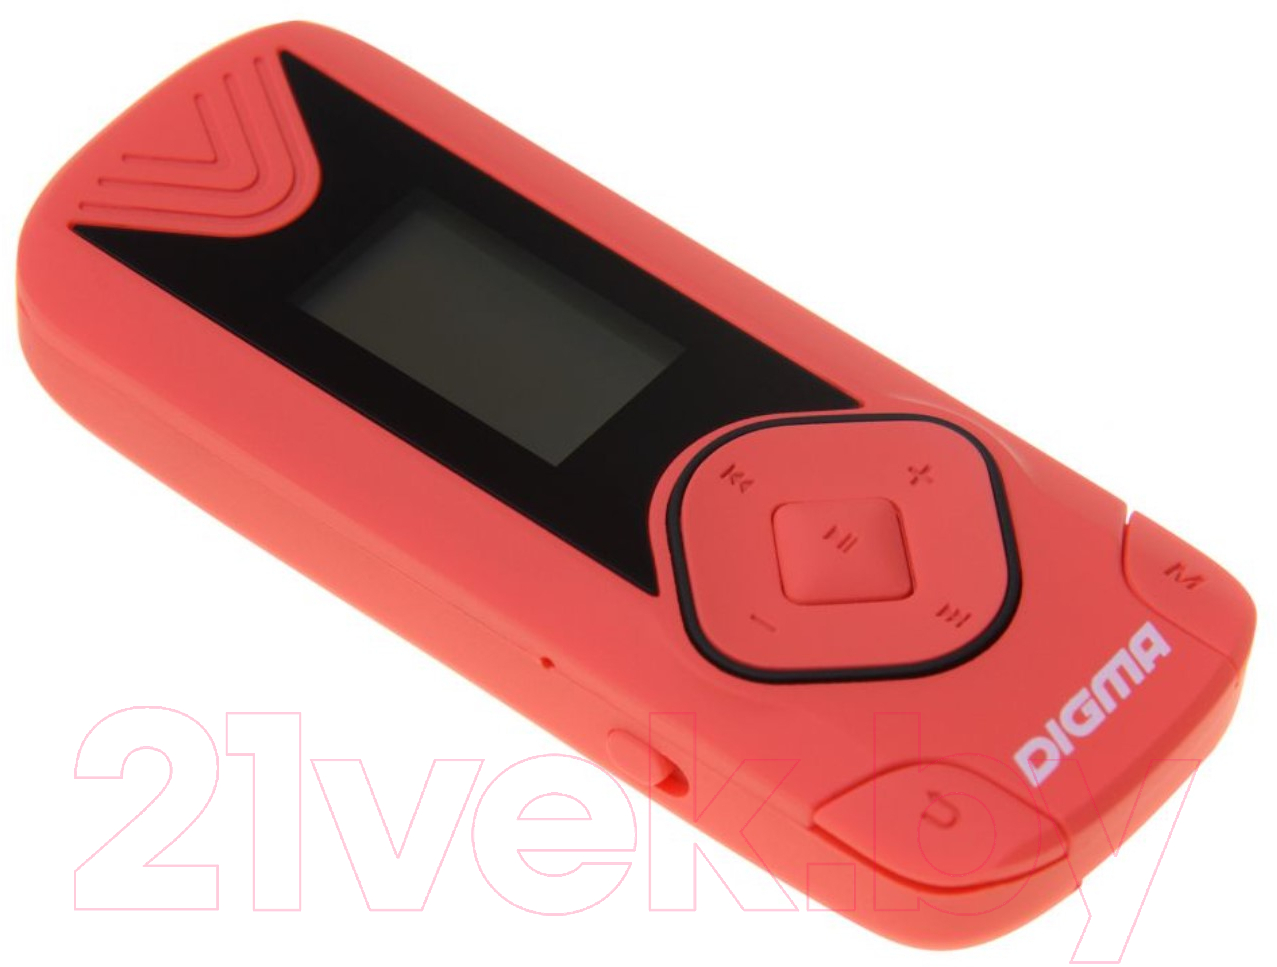 MP3-плеер Digma R3 8GB